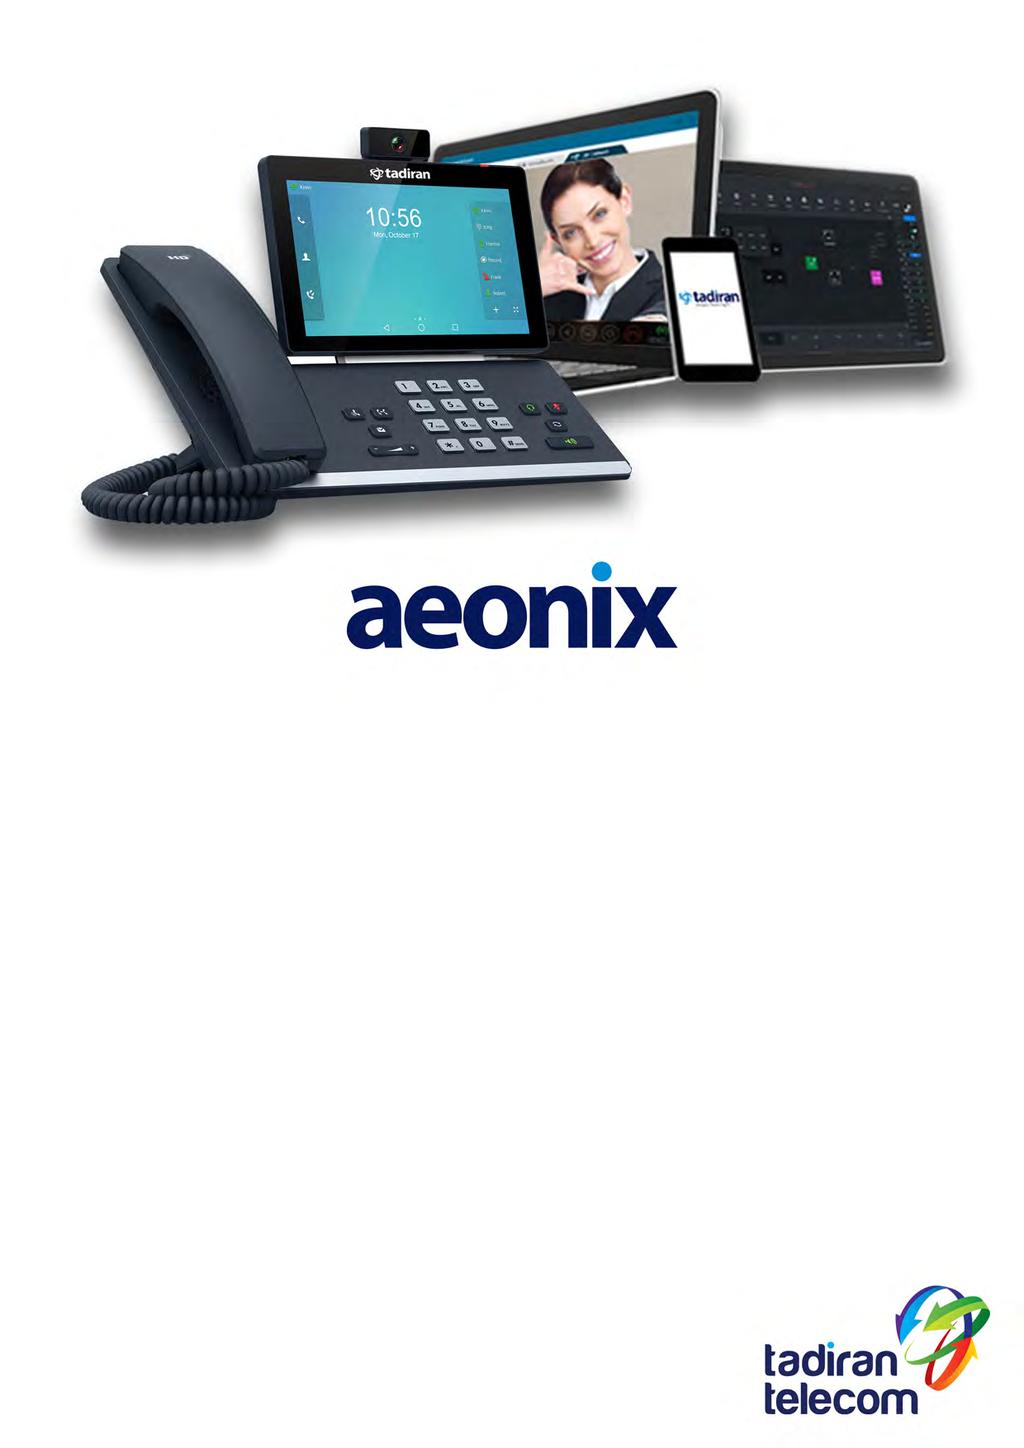 מערכתתקשורתאחודה Aeonixהינהפלטפורמתתקשורתאחודה( UnifiedCommunication )מתקדמתמבוססתתוכנה, המפותחתבישראל,נמצאתבחזיתהטכנולוגיתומותקנתבמספררבשלארגוניםבישראלובעולם.